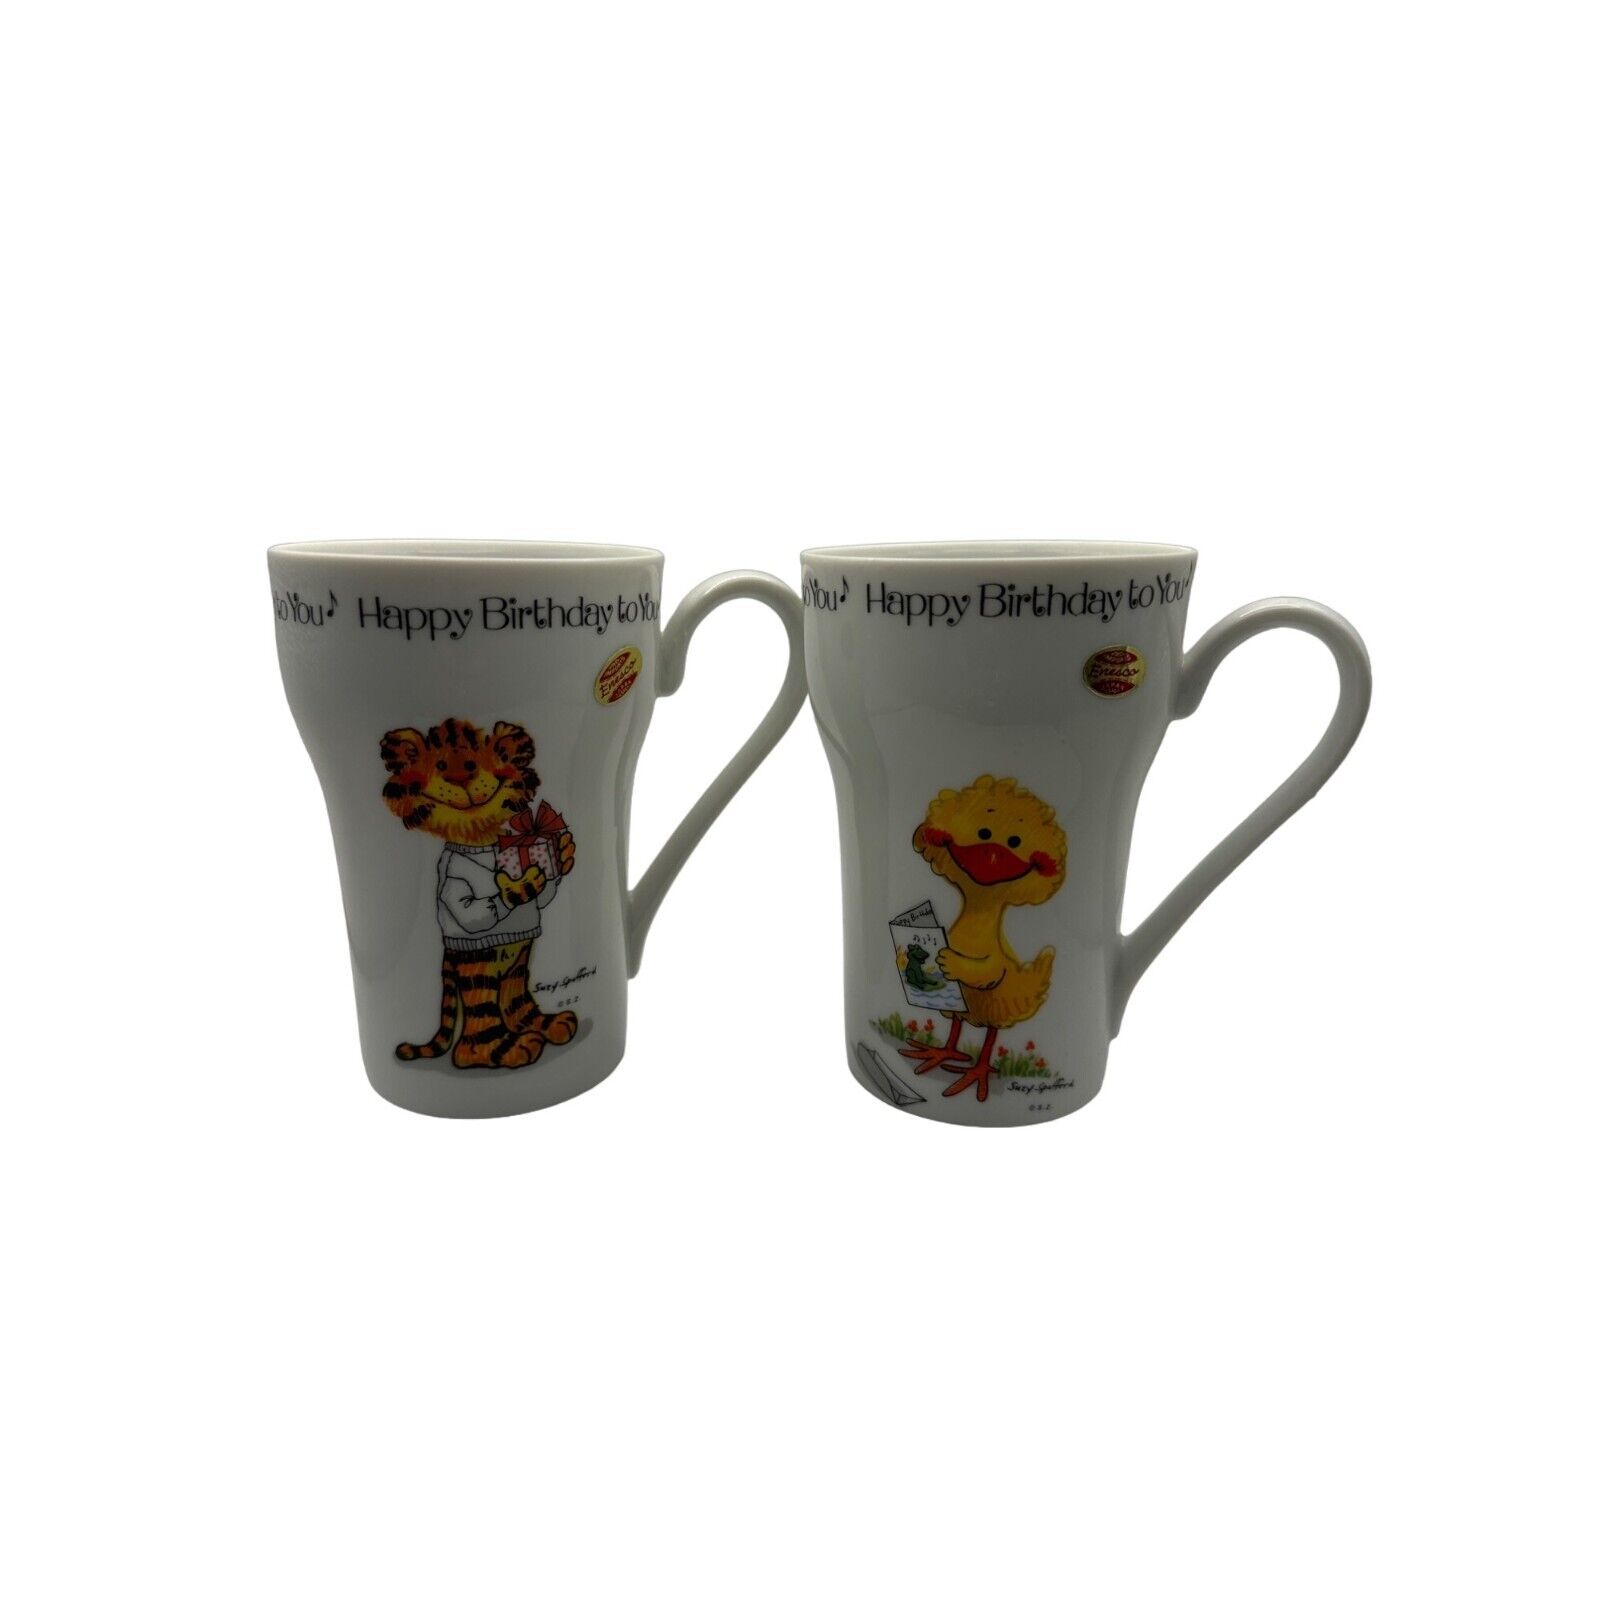 Vintage Enesco Happy Birthday Soda Mugs 1976 Suzy's Set of 2 Tiger and Duck